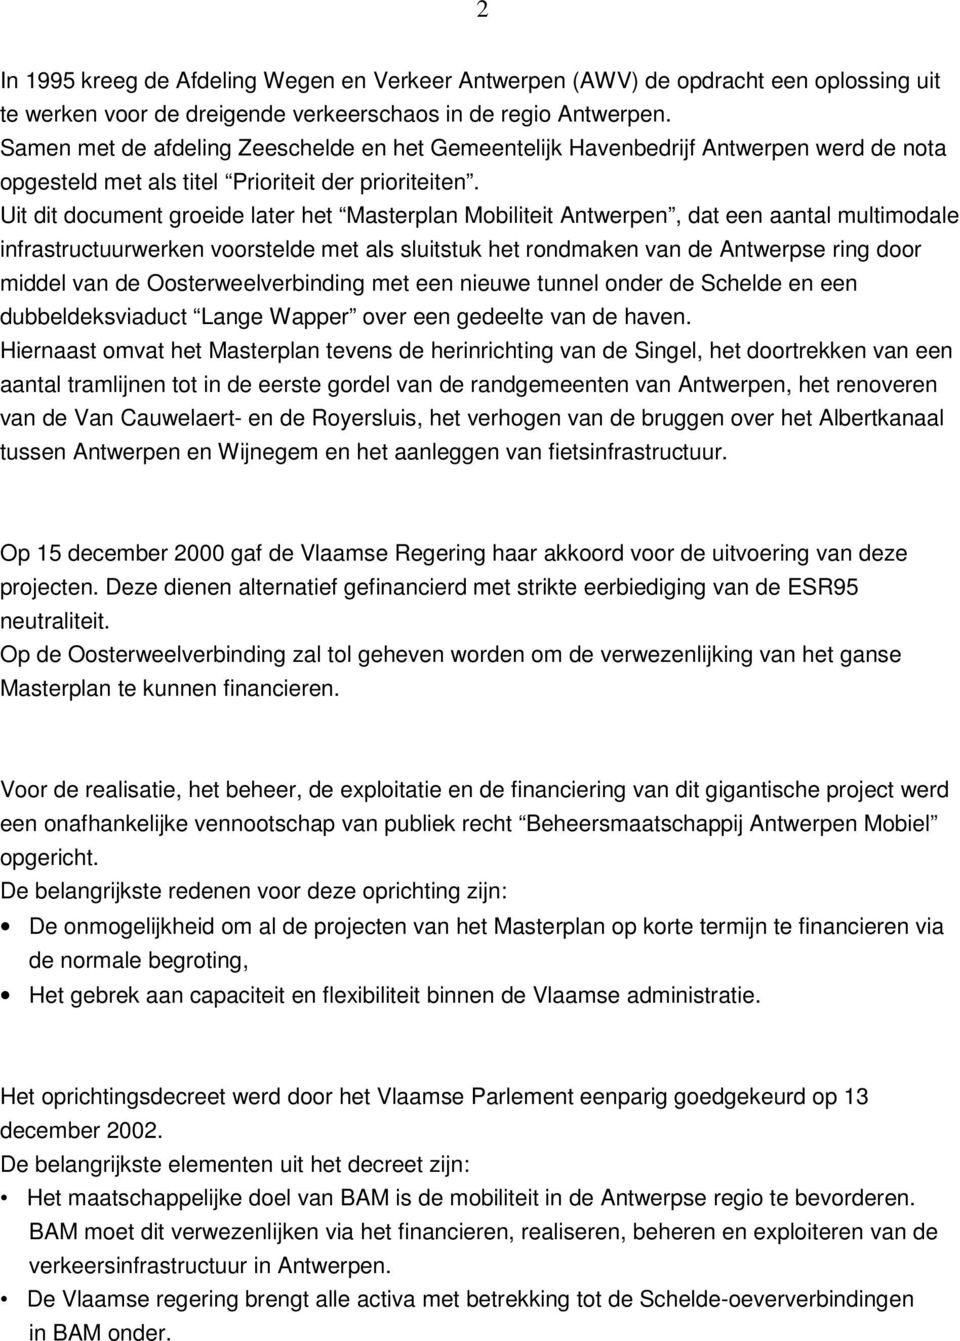 Uit dit document groeide later het Masterplan Mobiliteit Antwerpen, dat een aantal multimodale infrastructuurwerken voorstelde met als sluitstuk het rondmaken van de Antwerpse ring door middel van de